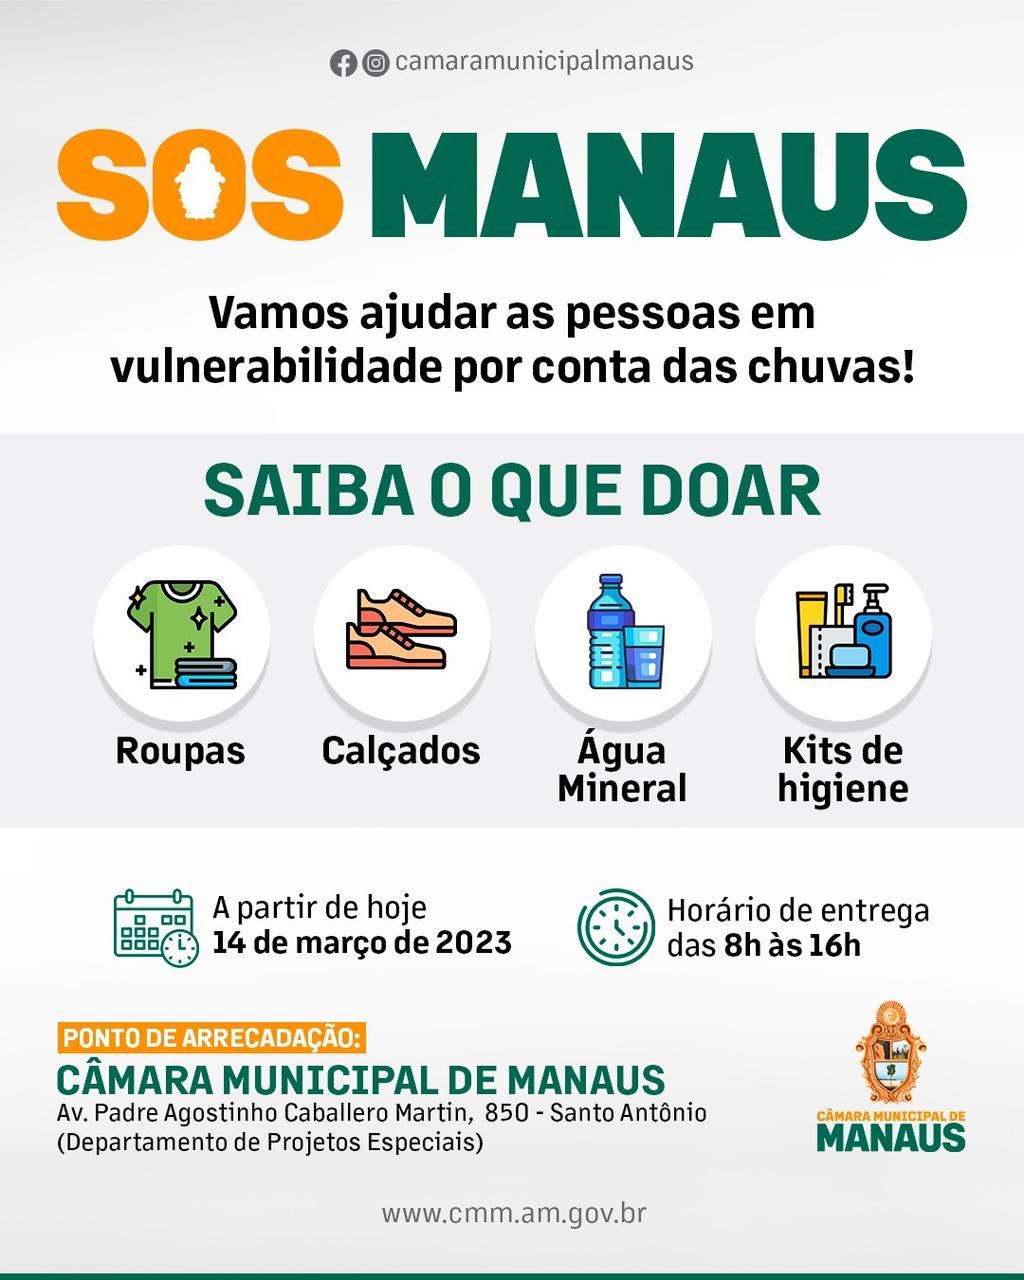 Pres. da CMM Caio André anuncia campanha para arrecadar doações para vítimas das chuvas em Manaus